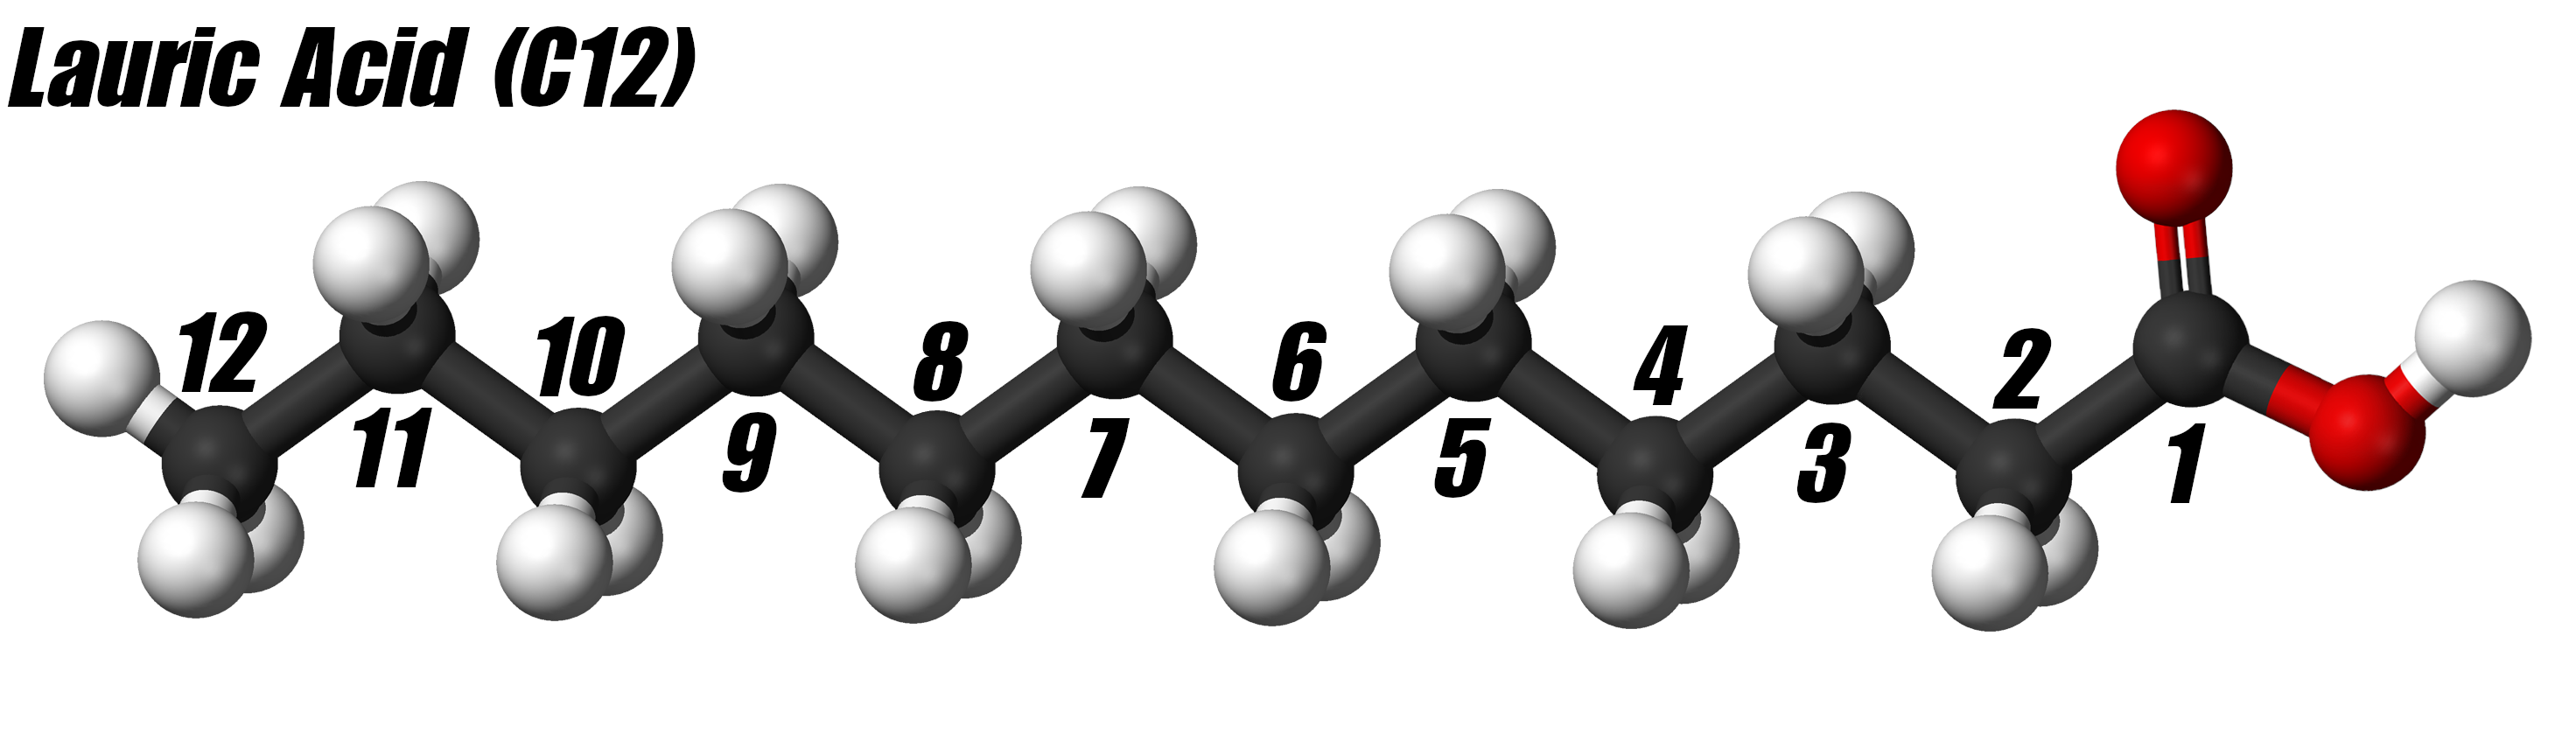 Lauric Acid (C12)